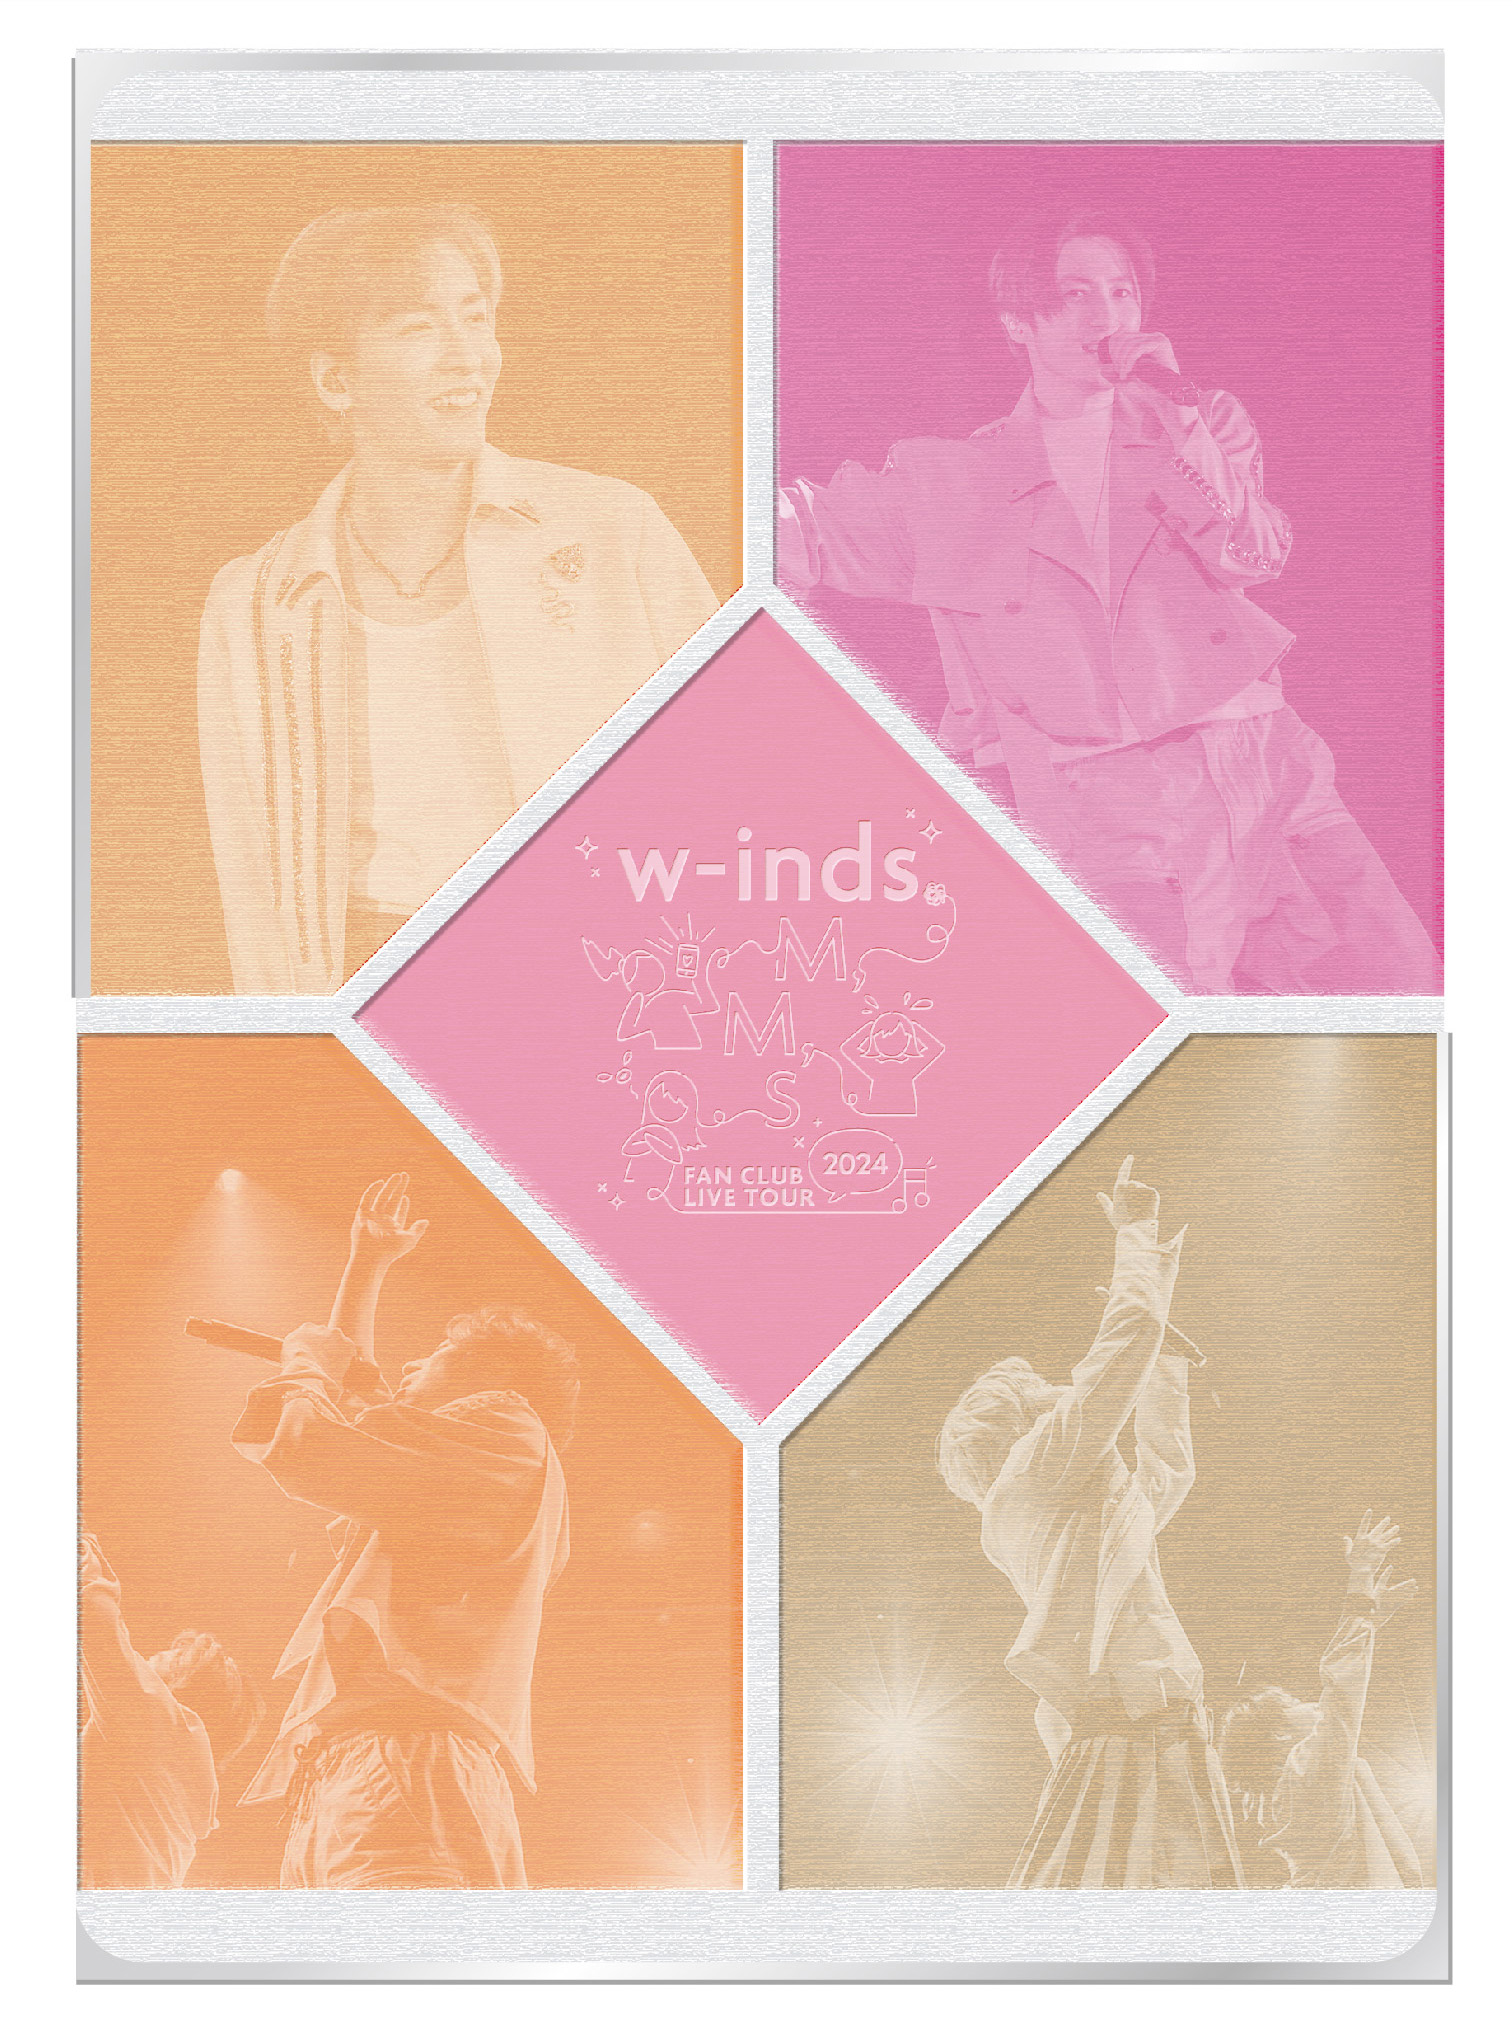 DVD/Blu-ray「w-inds. FAN CLUB LIVE TOUR 2024〜M,M,S〜」ファン 